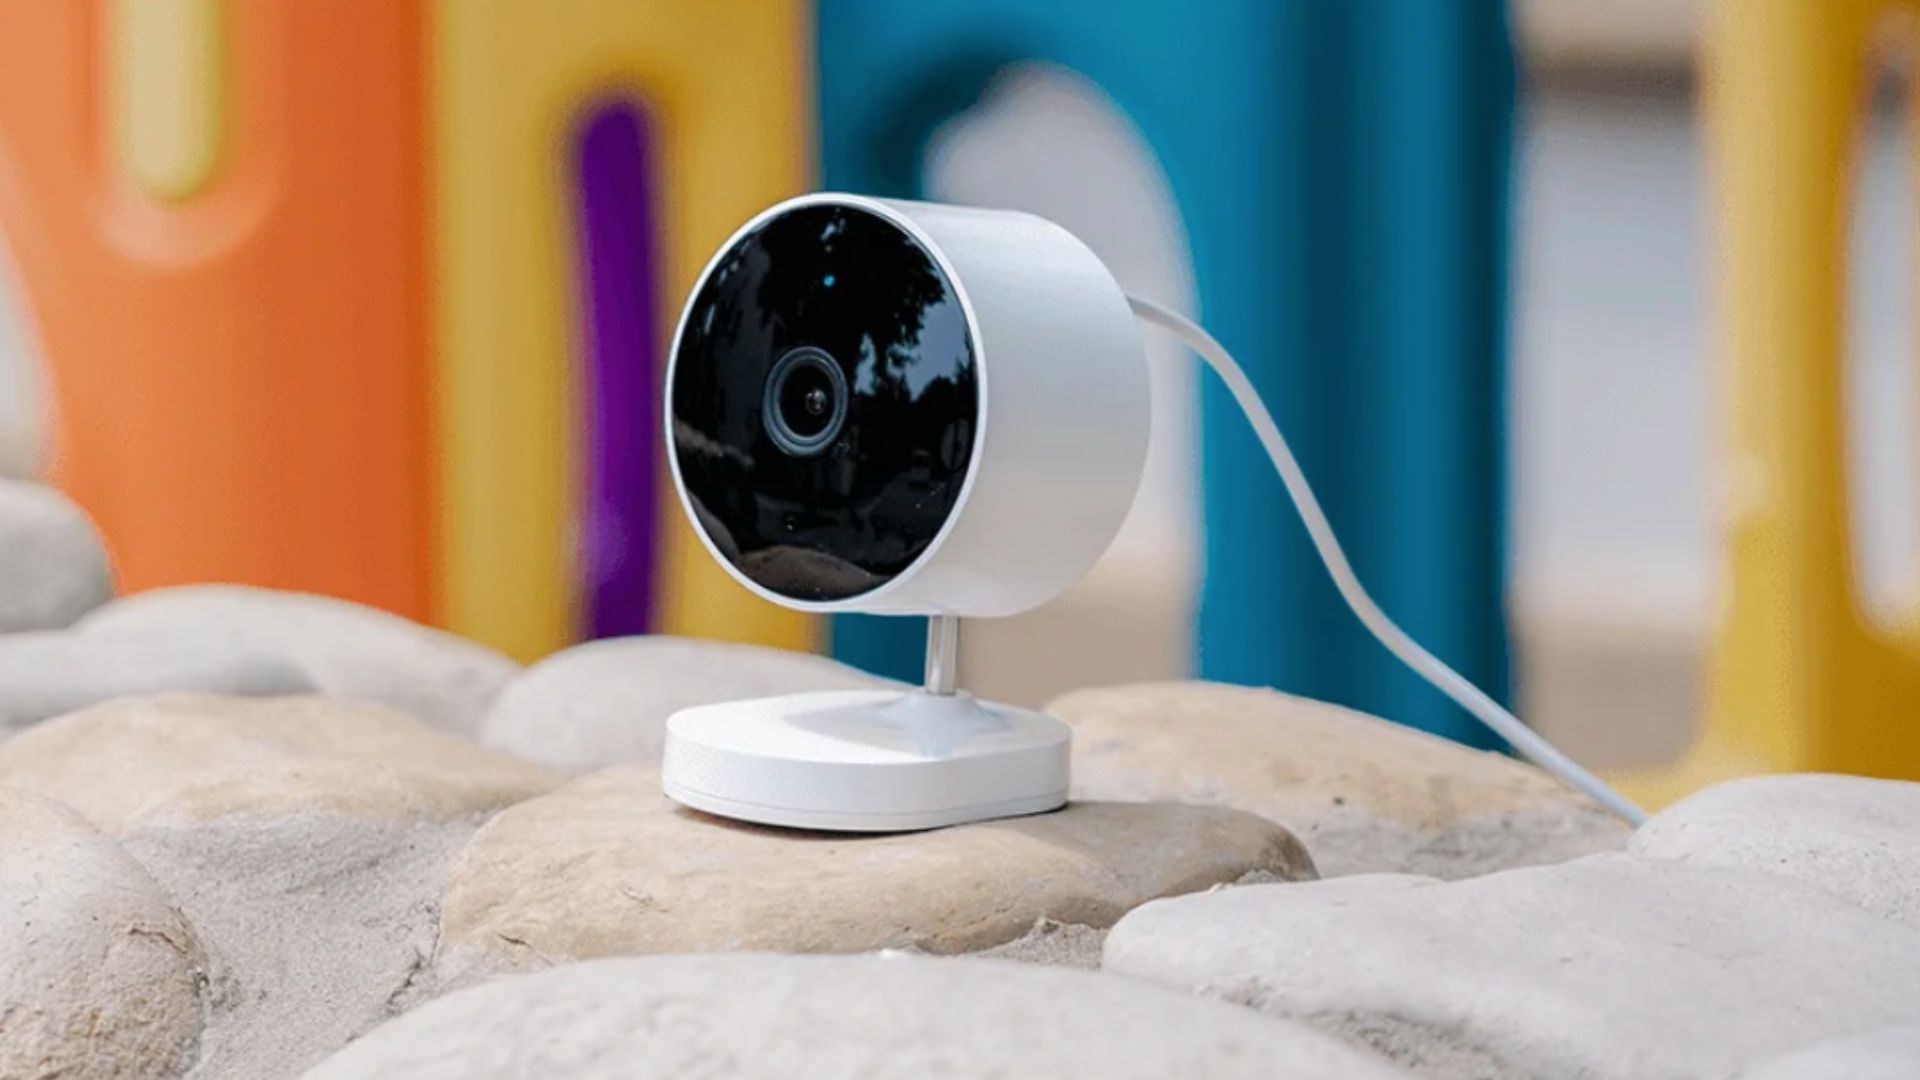 Mi 360° Home Security Camera 2K et 2K Pro : deux nouvelles caméras d' intérieur chez Xiaomi - Les Numériques